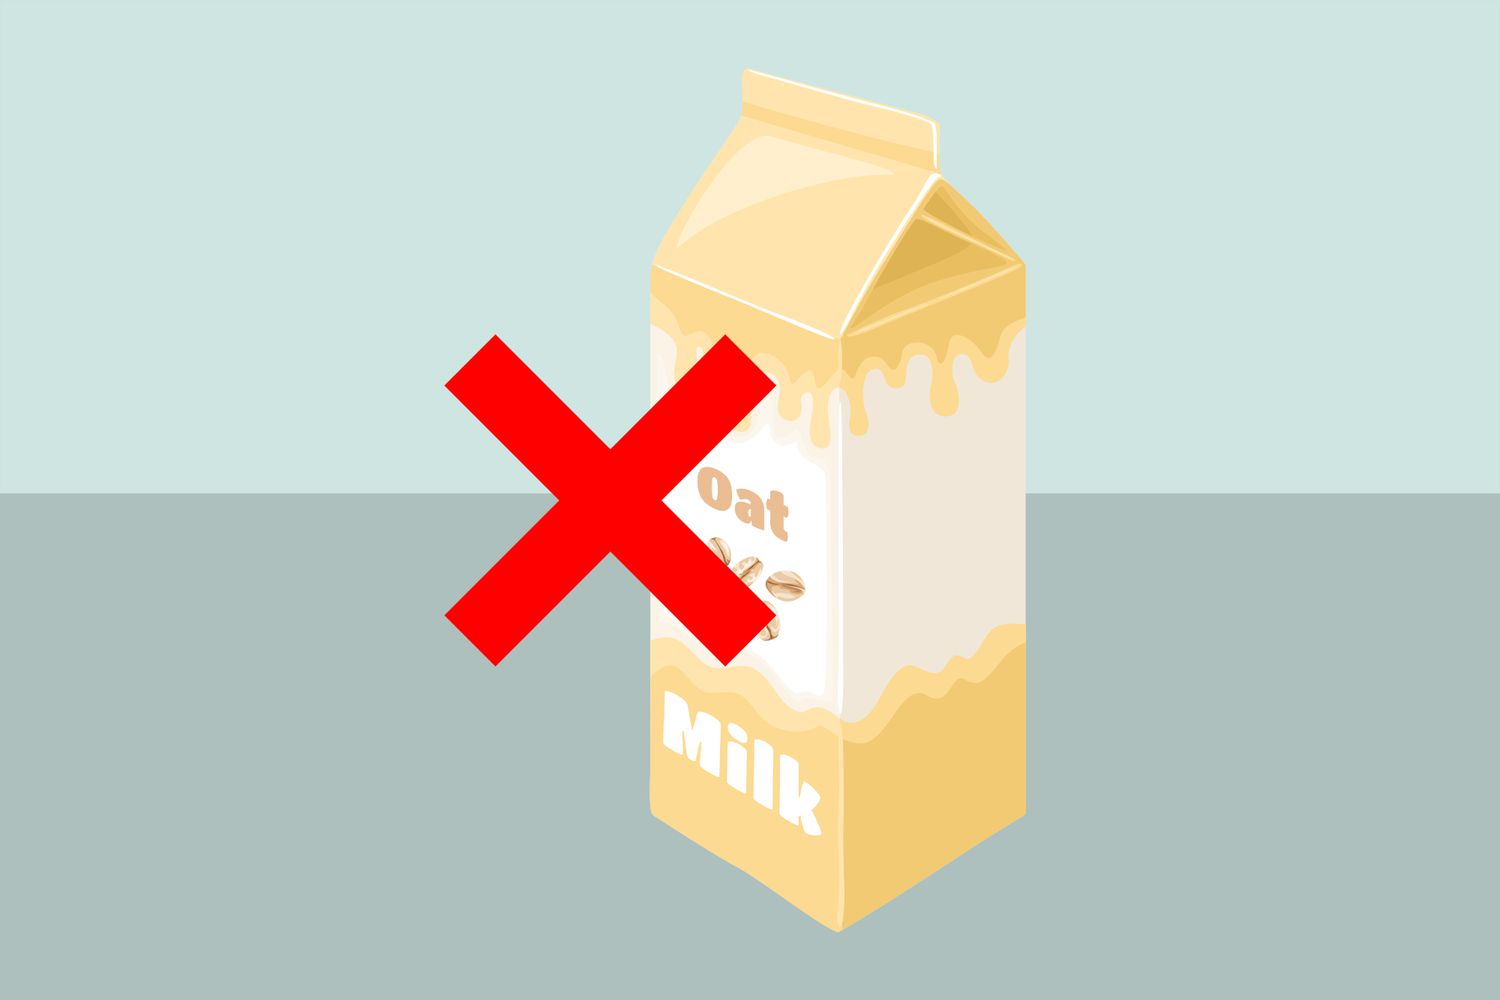 Ilustración de un paquete de leche de avena con una marca X roja